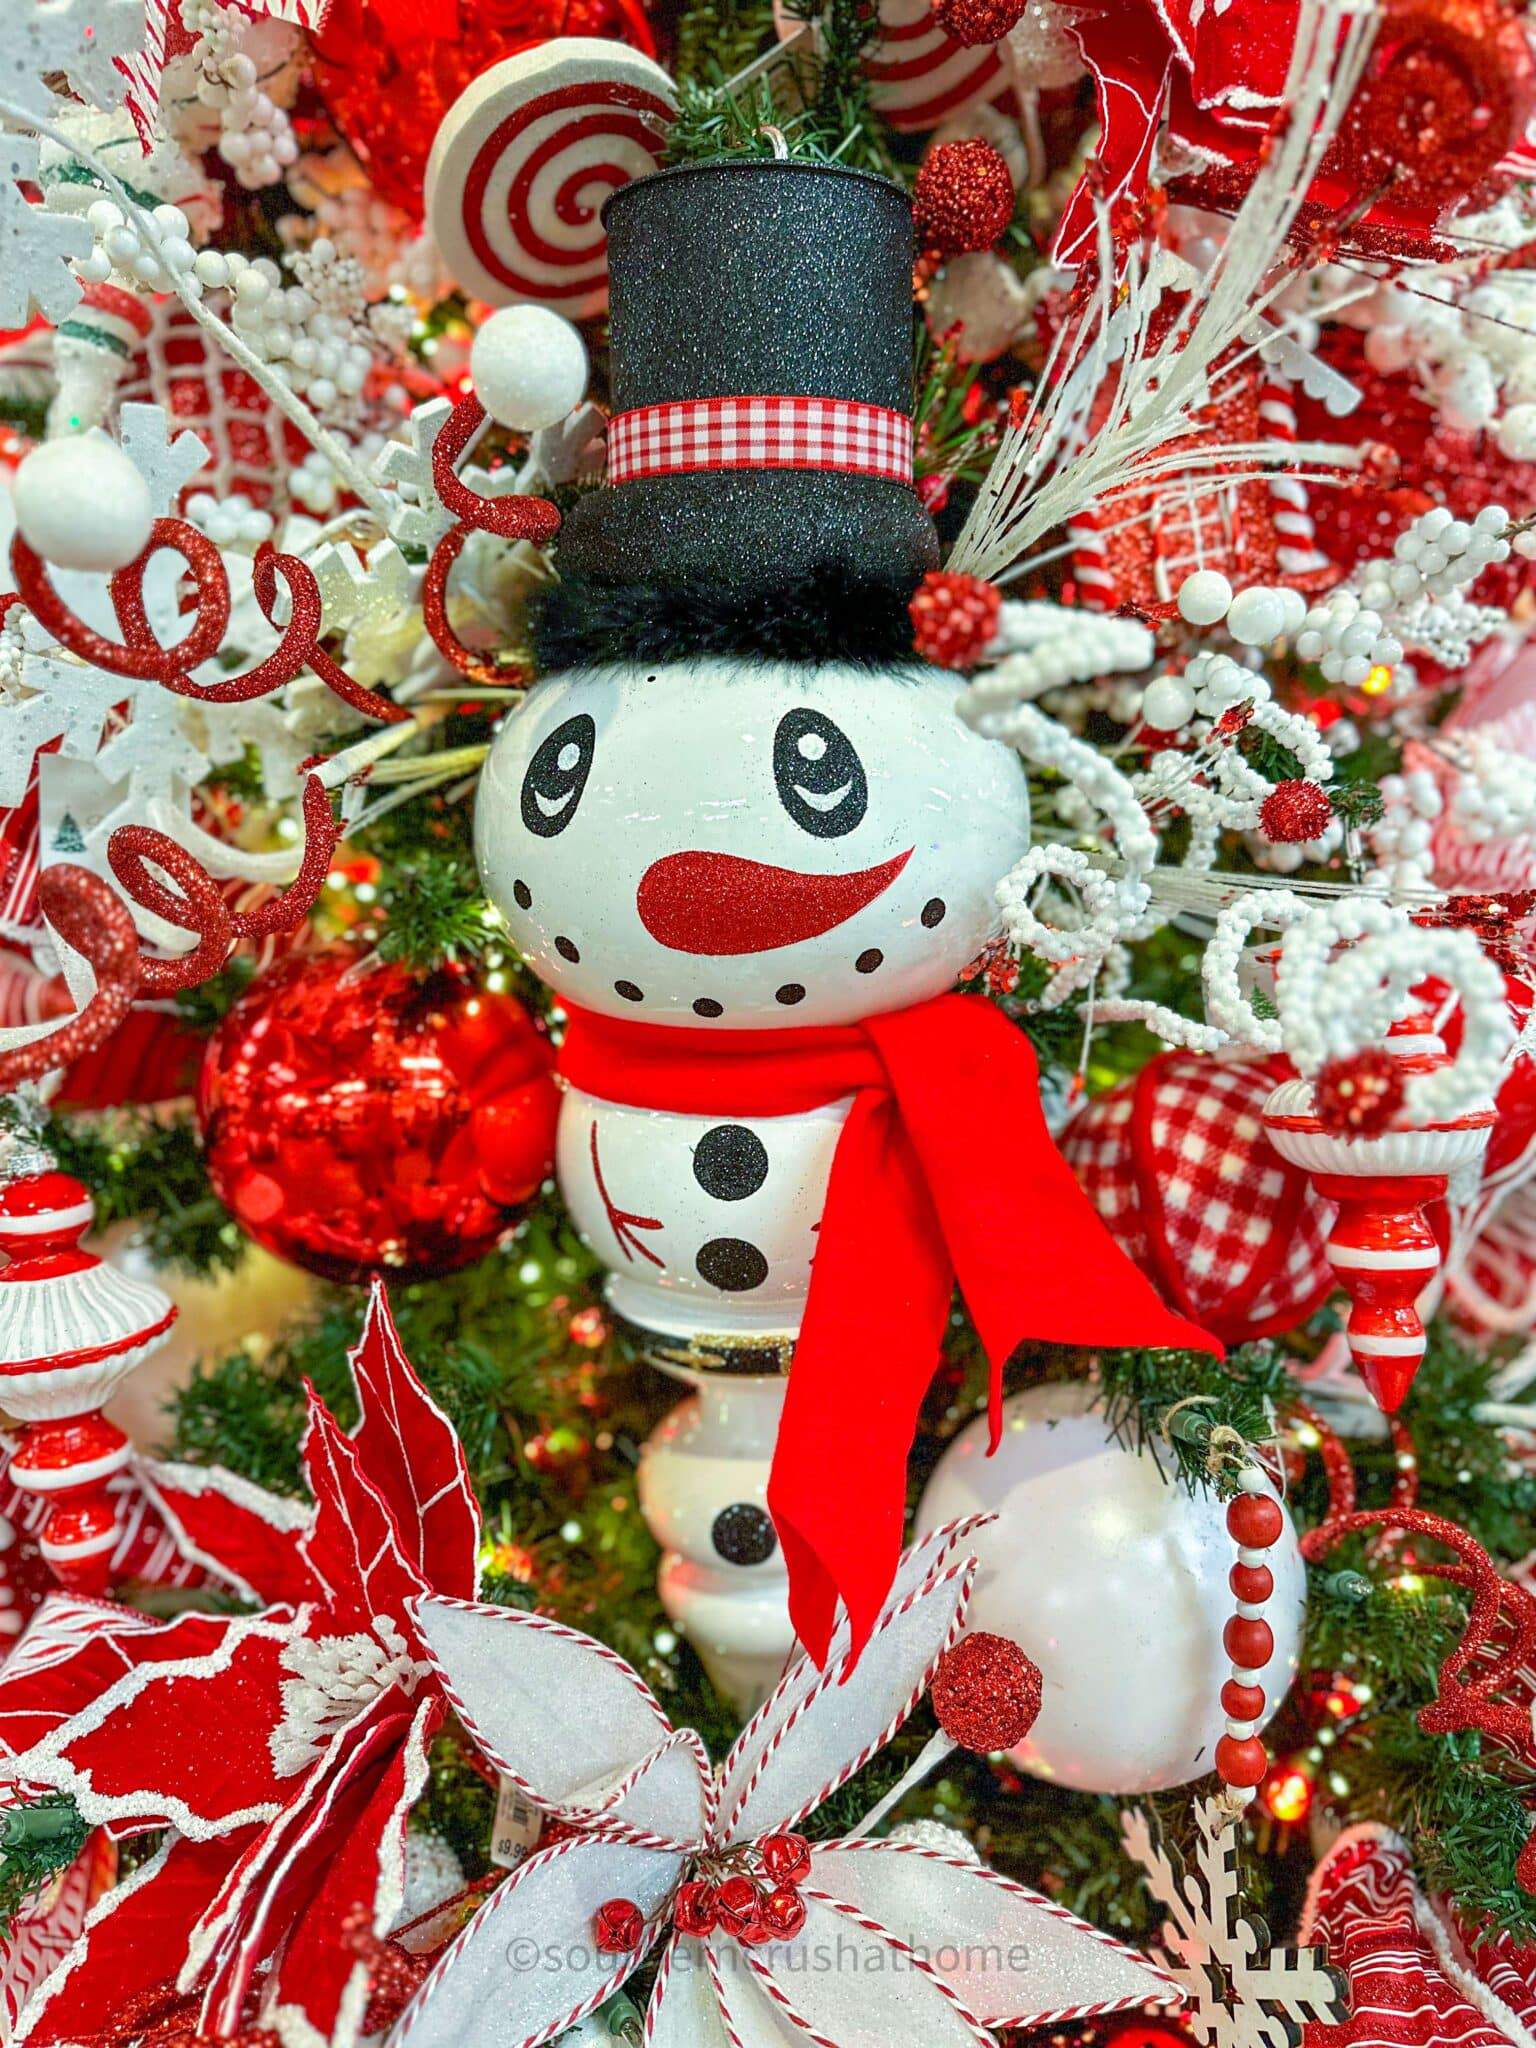 up close snowman ornament